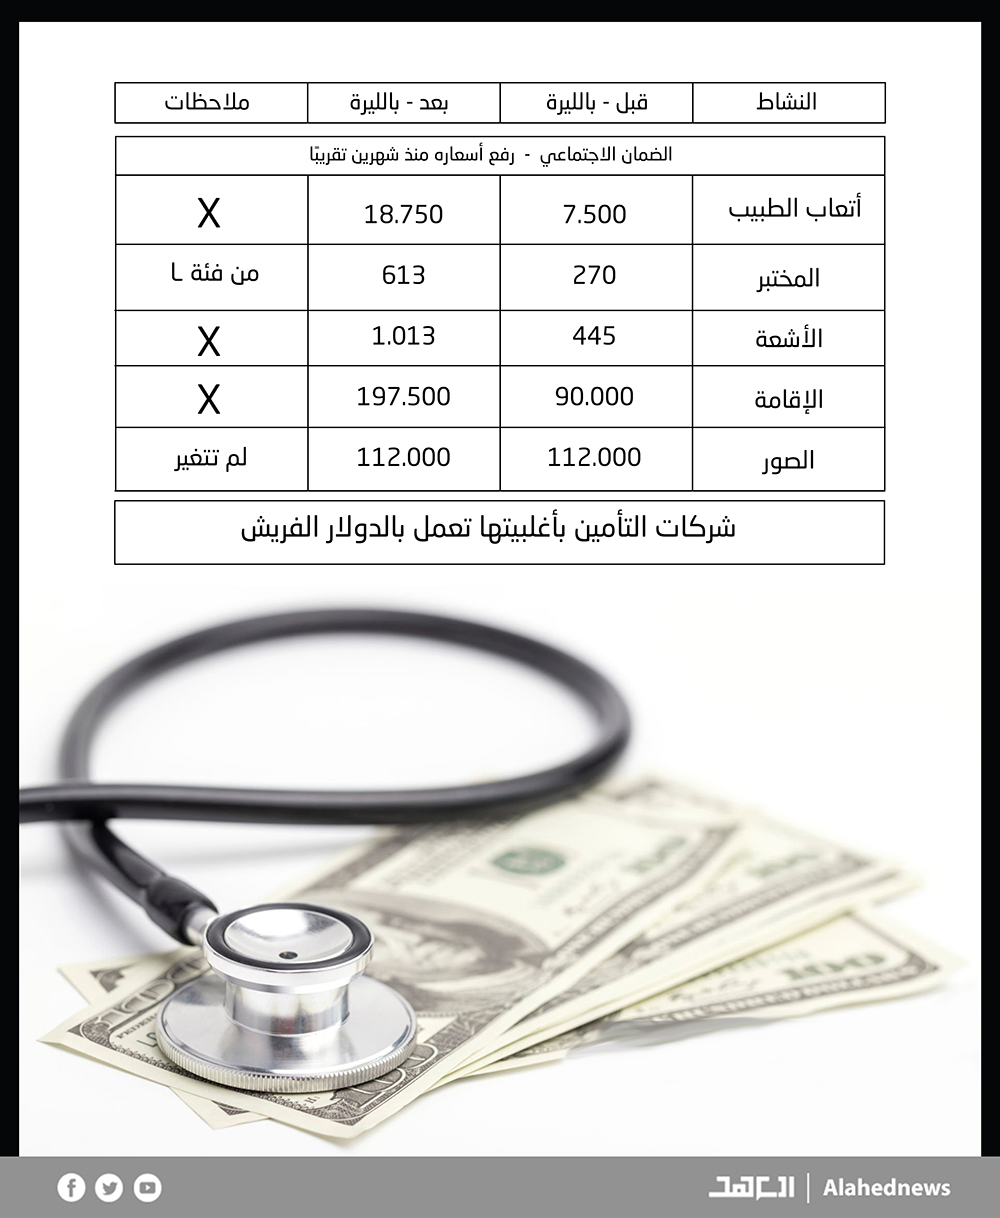 قبل دخوله المستشفى.. اللبناني بحاجة لمعرفة هذه الأرقام!